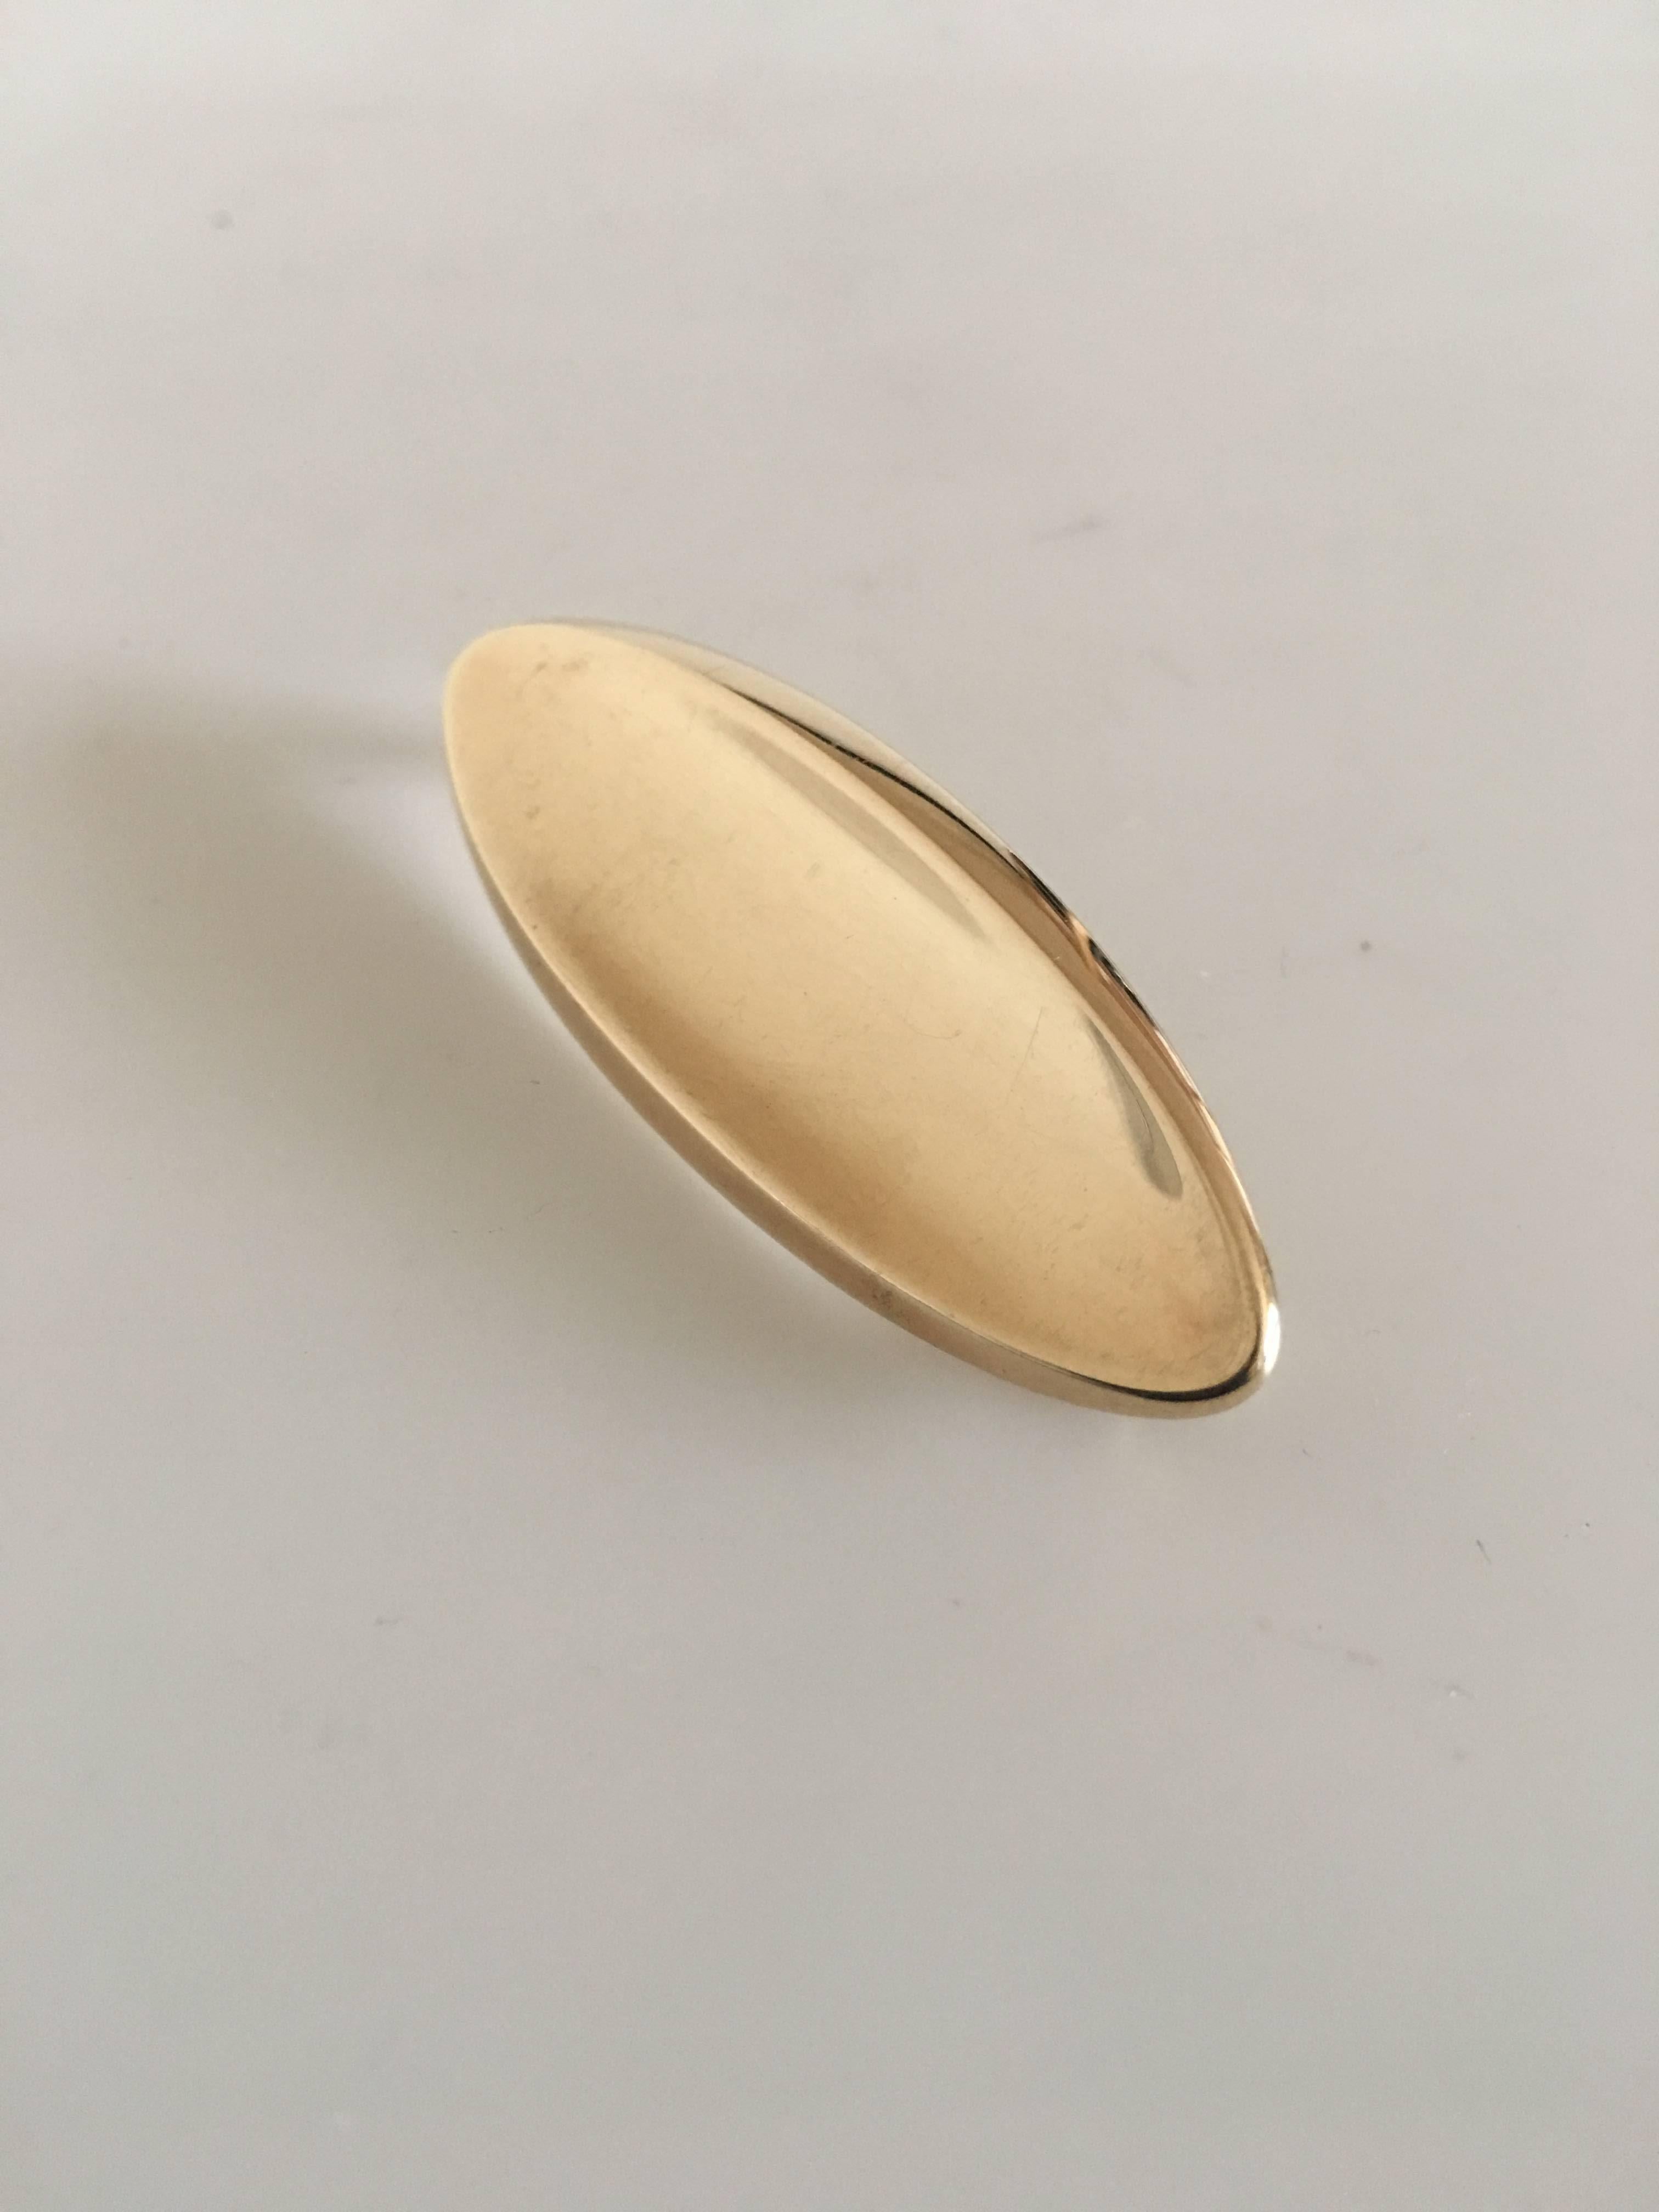 Hans Hansen 14-karat gold brooch #102. Measures: 5.6 cm L (2 13/64